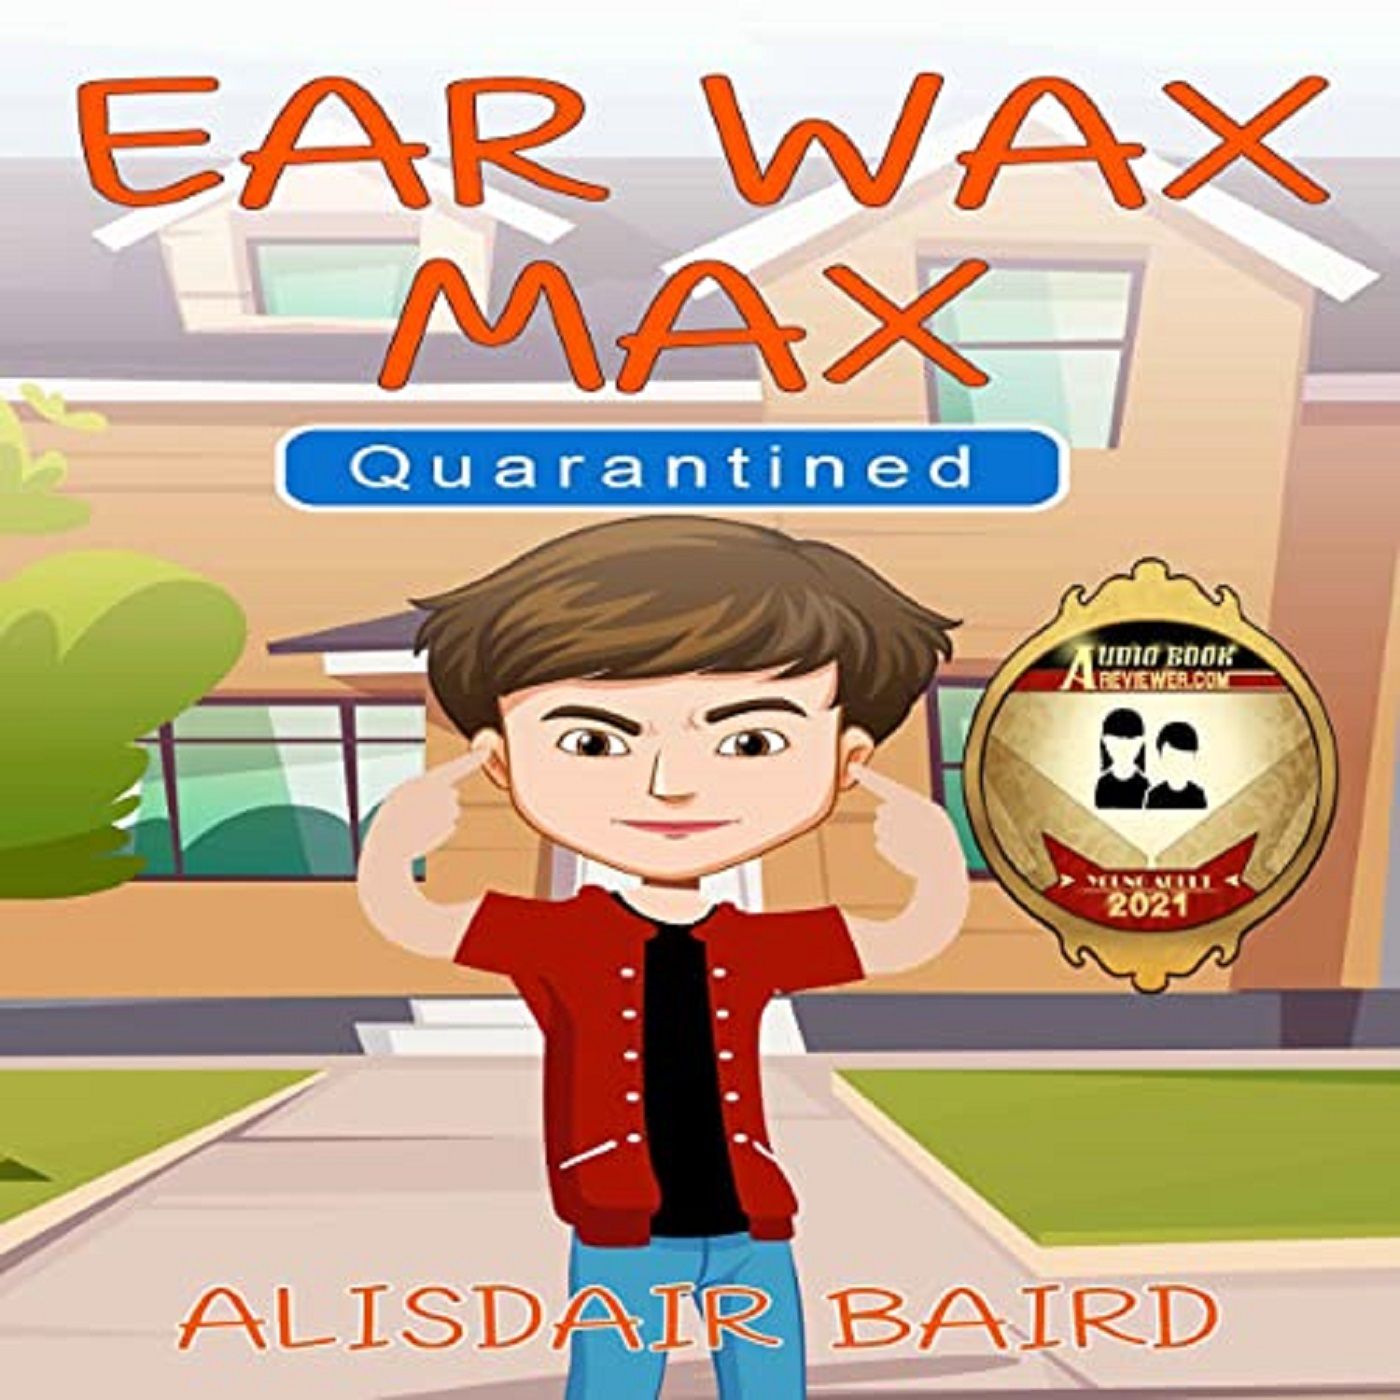 Ear Wax Max Quarantined by Alisdair Baird ch2